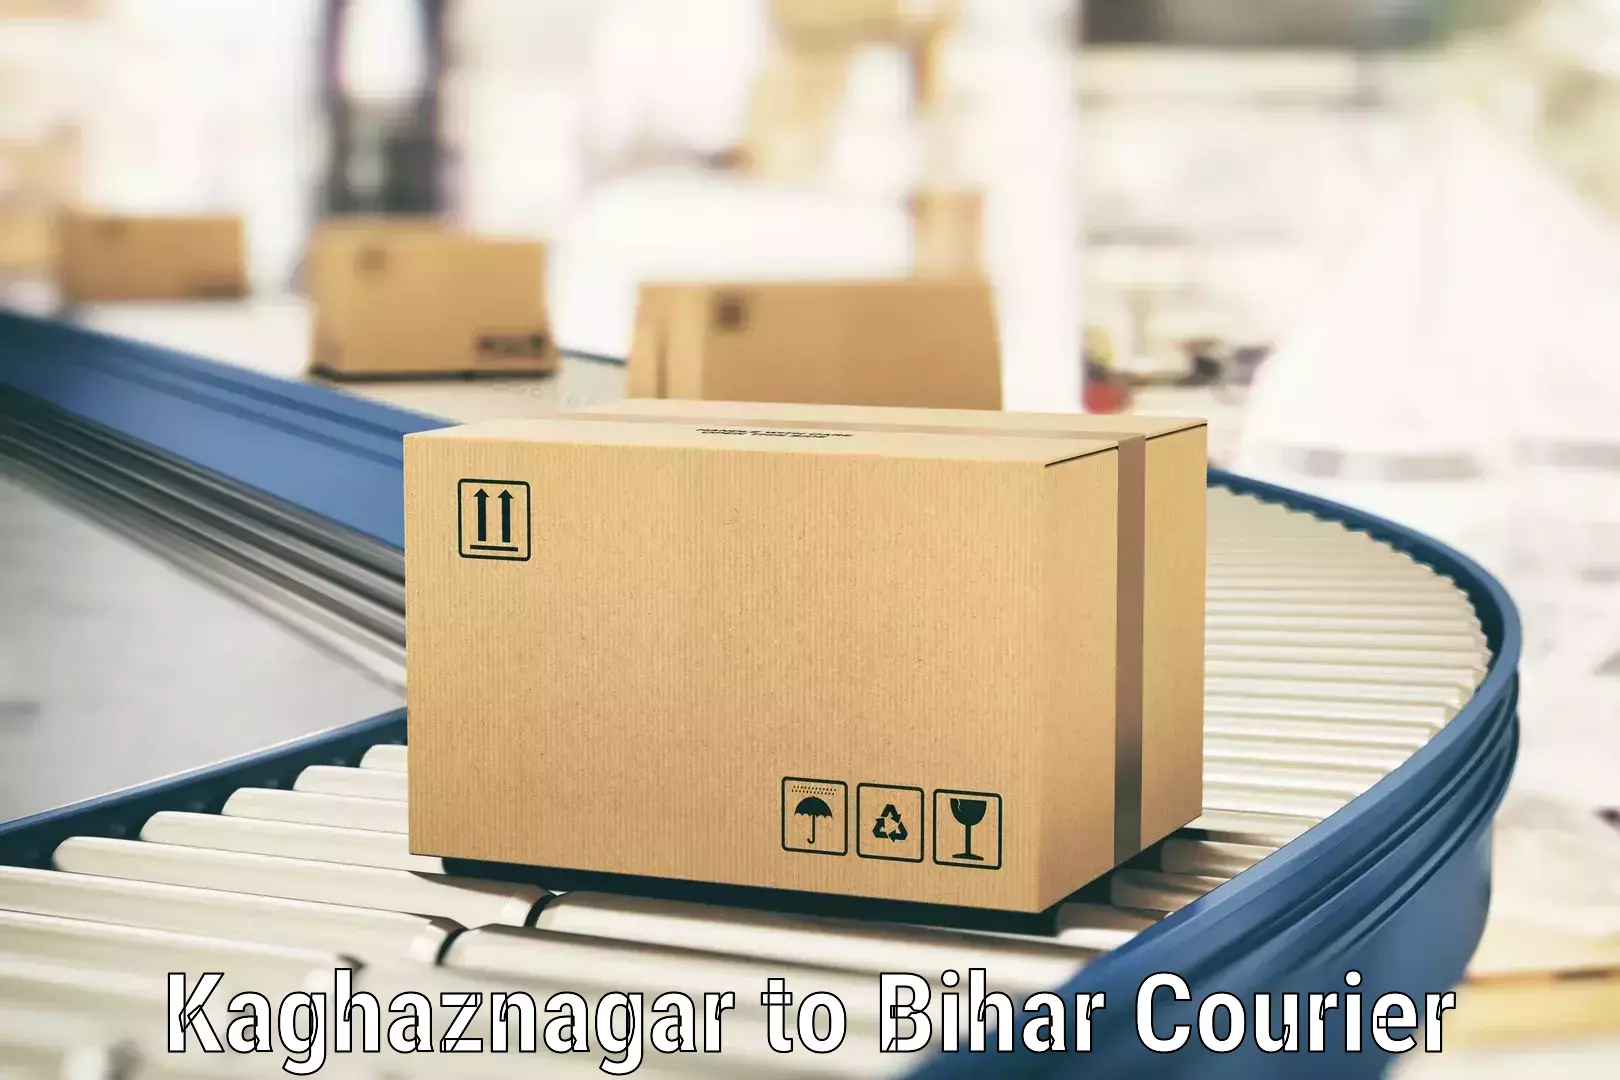 Supply chain delivery Kaghaznagar to IIIT Bhagalpur